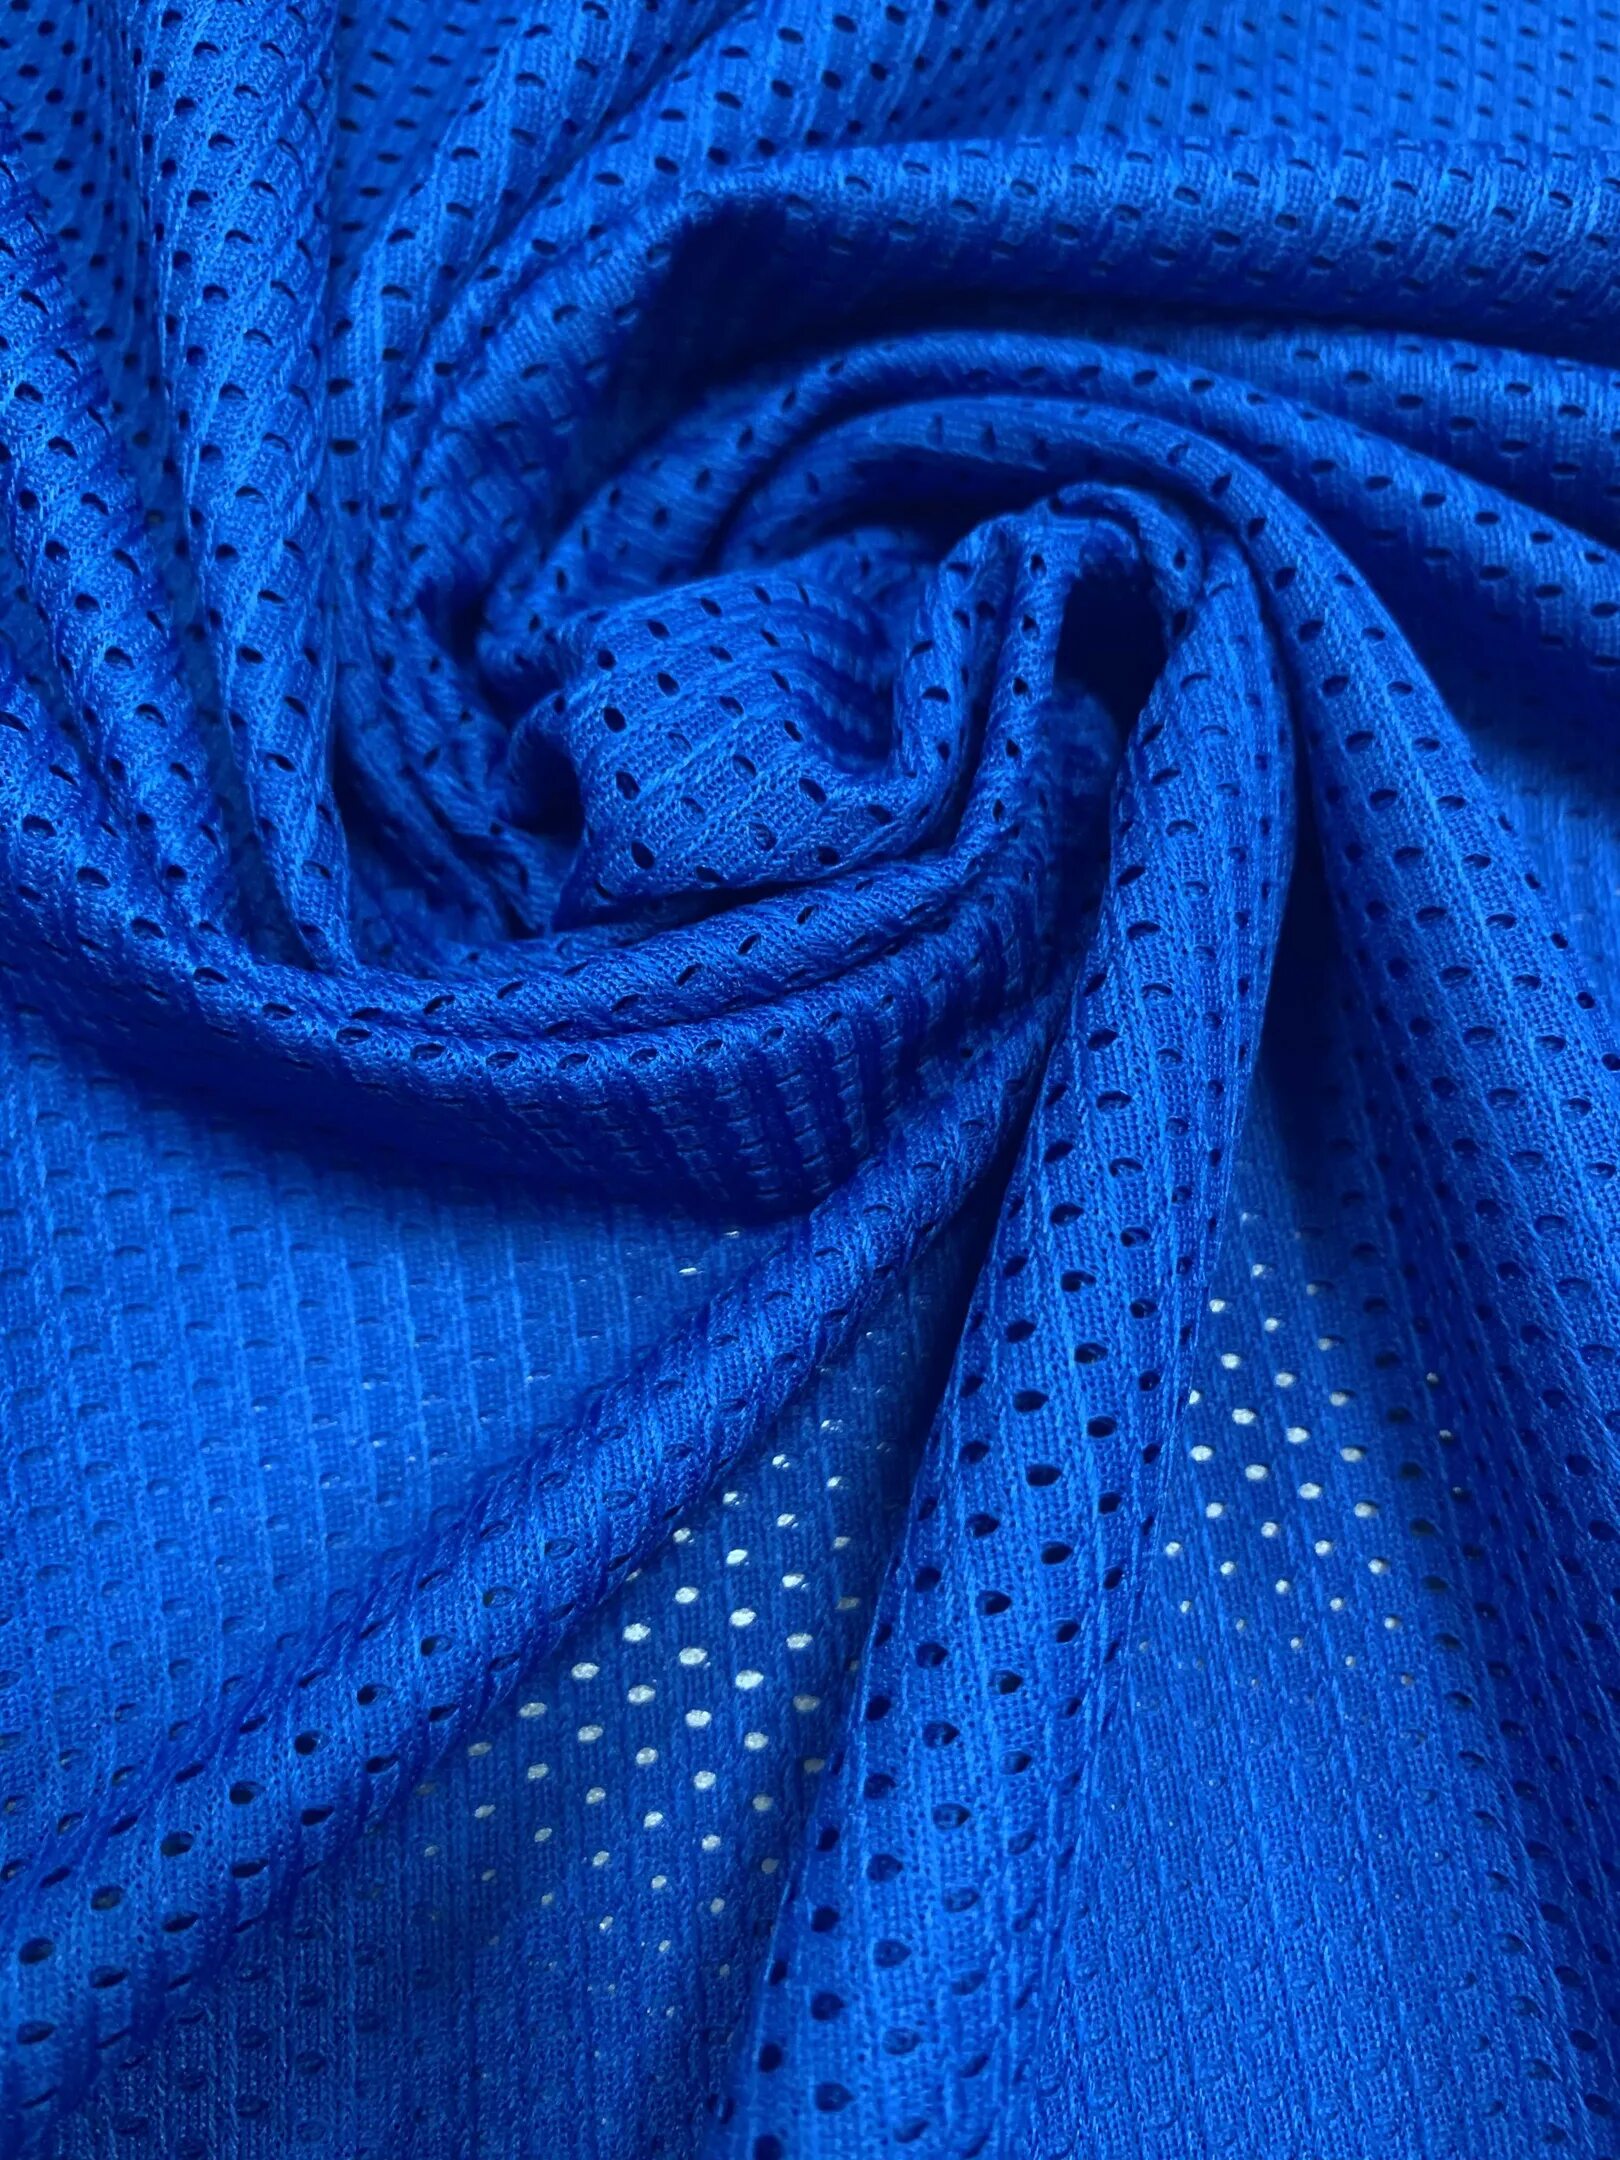 Ткань найка. Синяя сетка. Голубая сетка ткань. Синяя сеточная ткань. Синие найк тканевые.